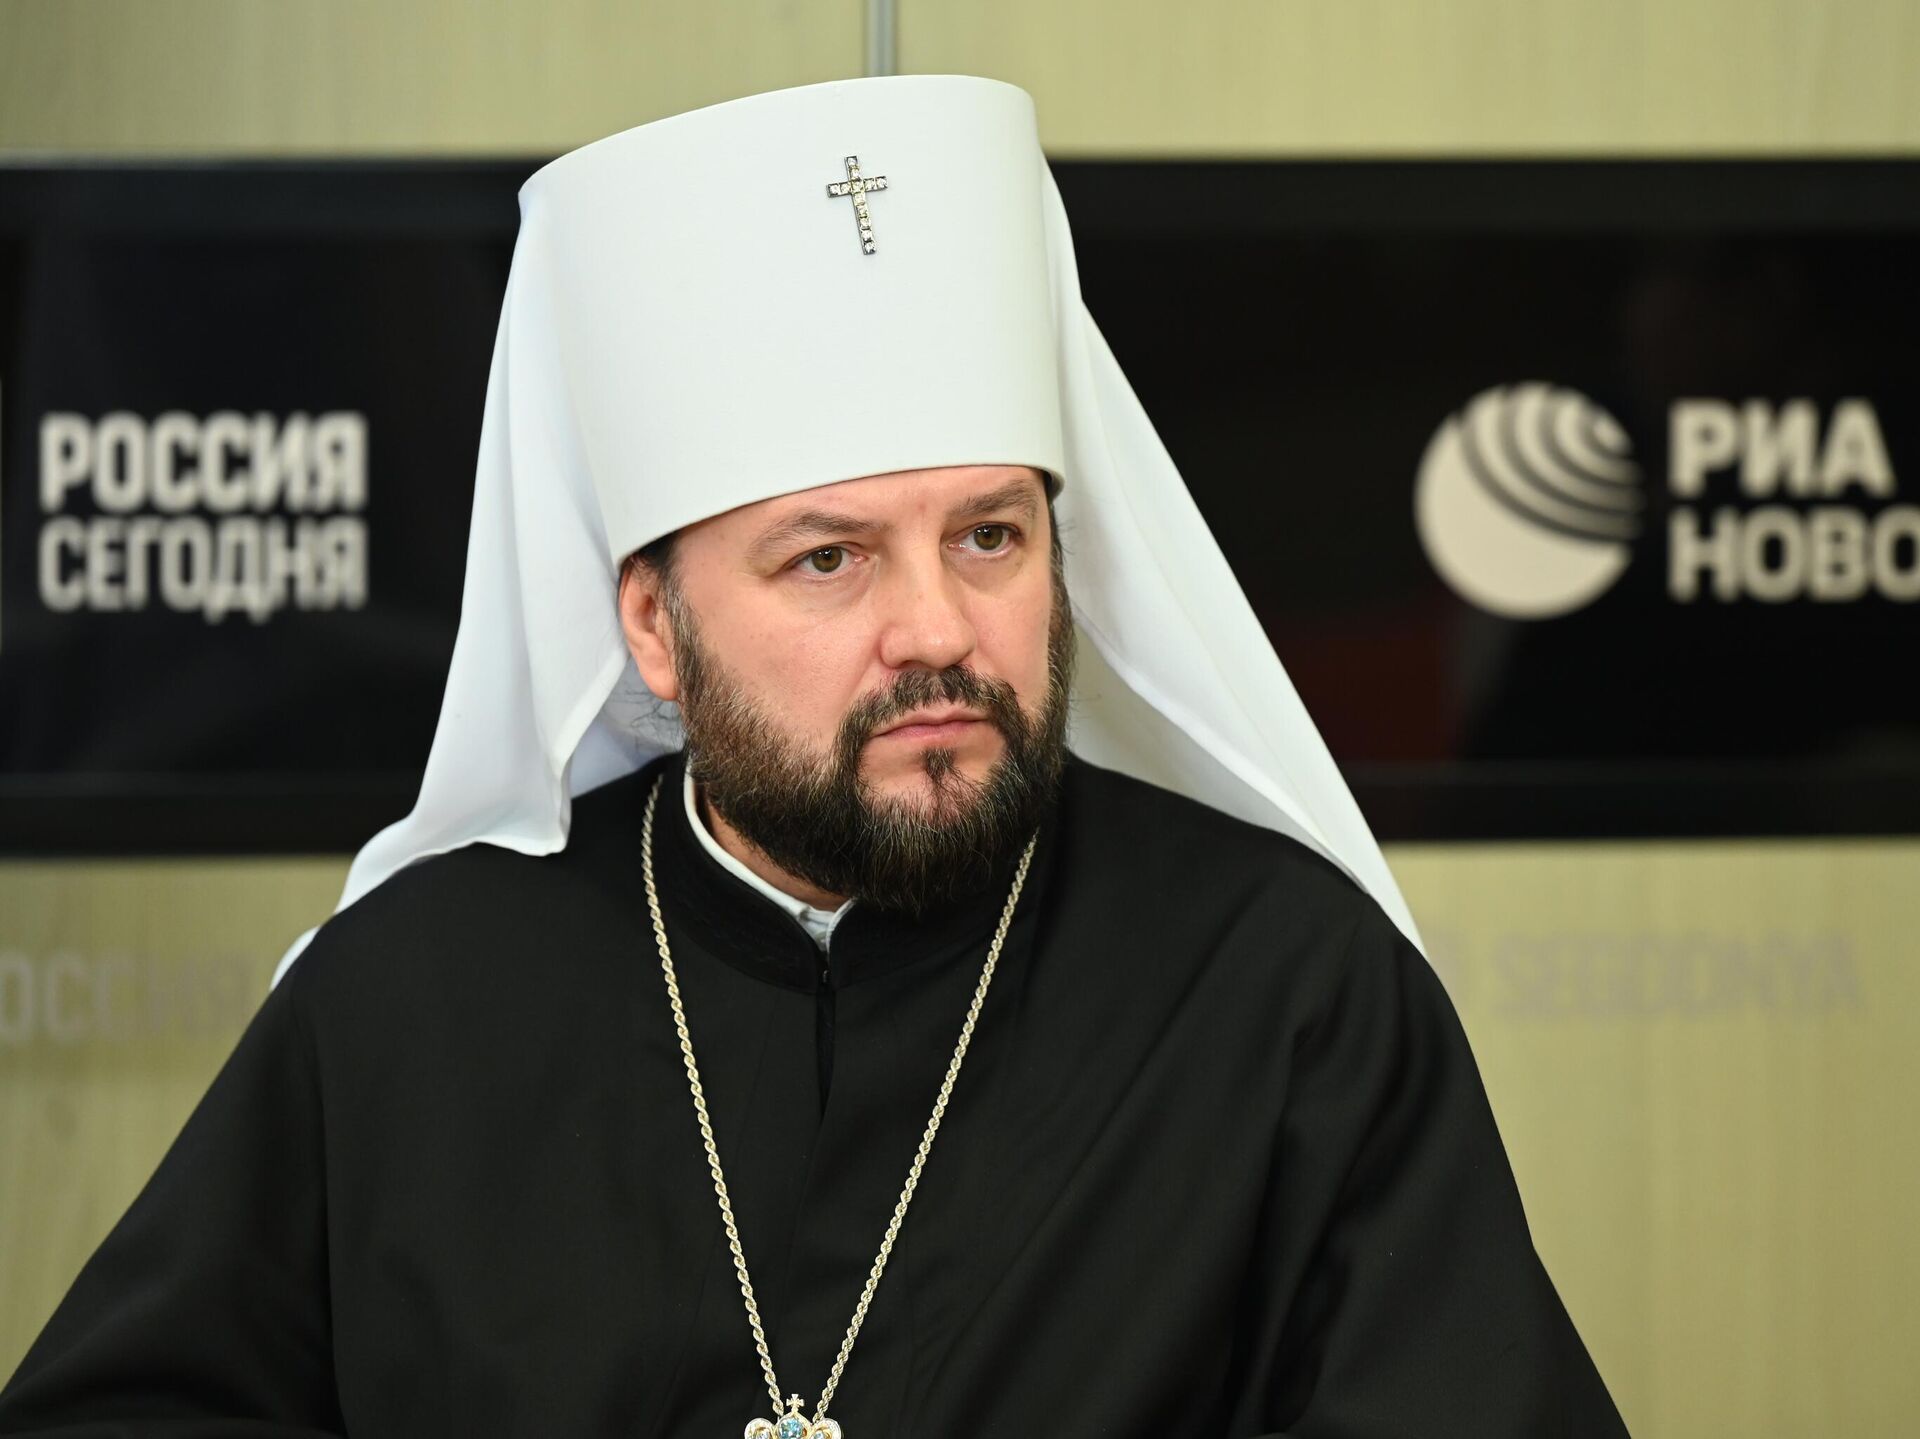 РПЦ: Ватикану стоит извиниться за обвинение Кирилла в ереси